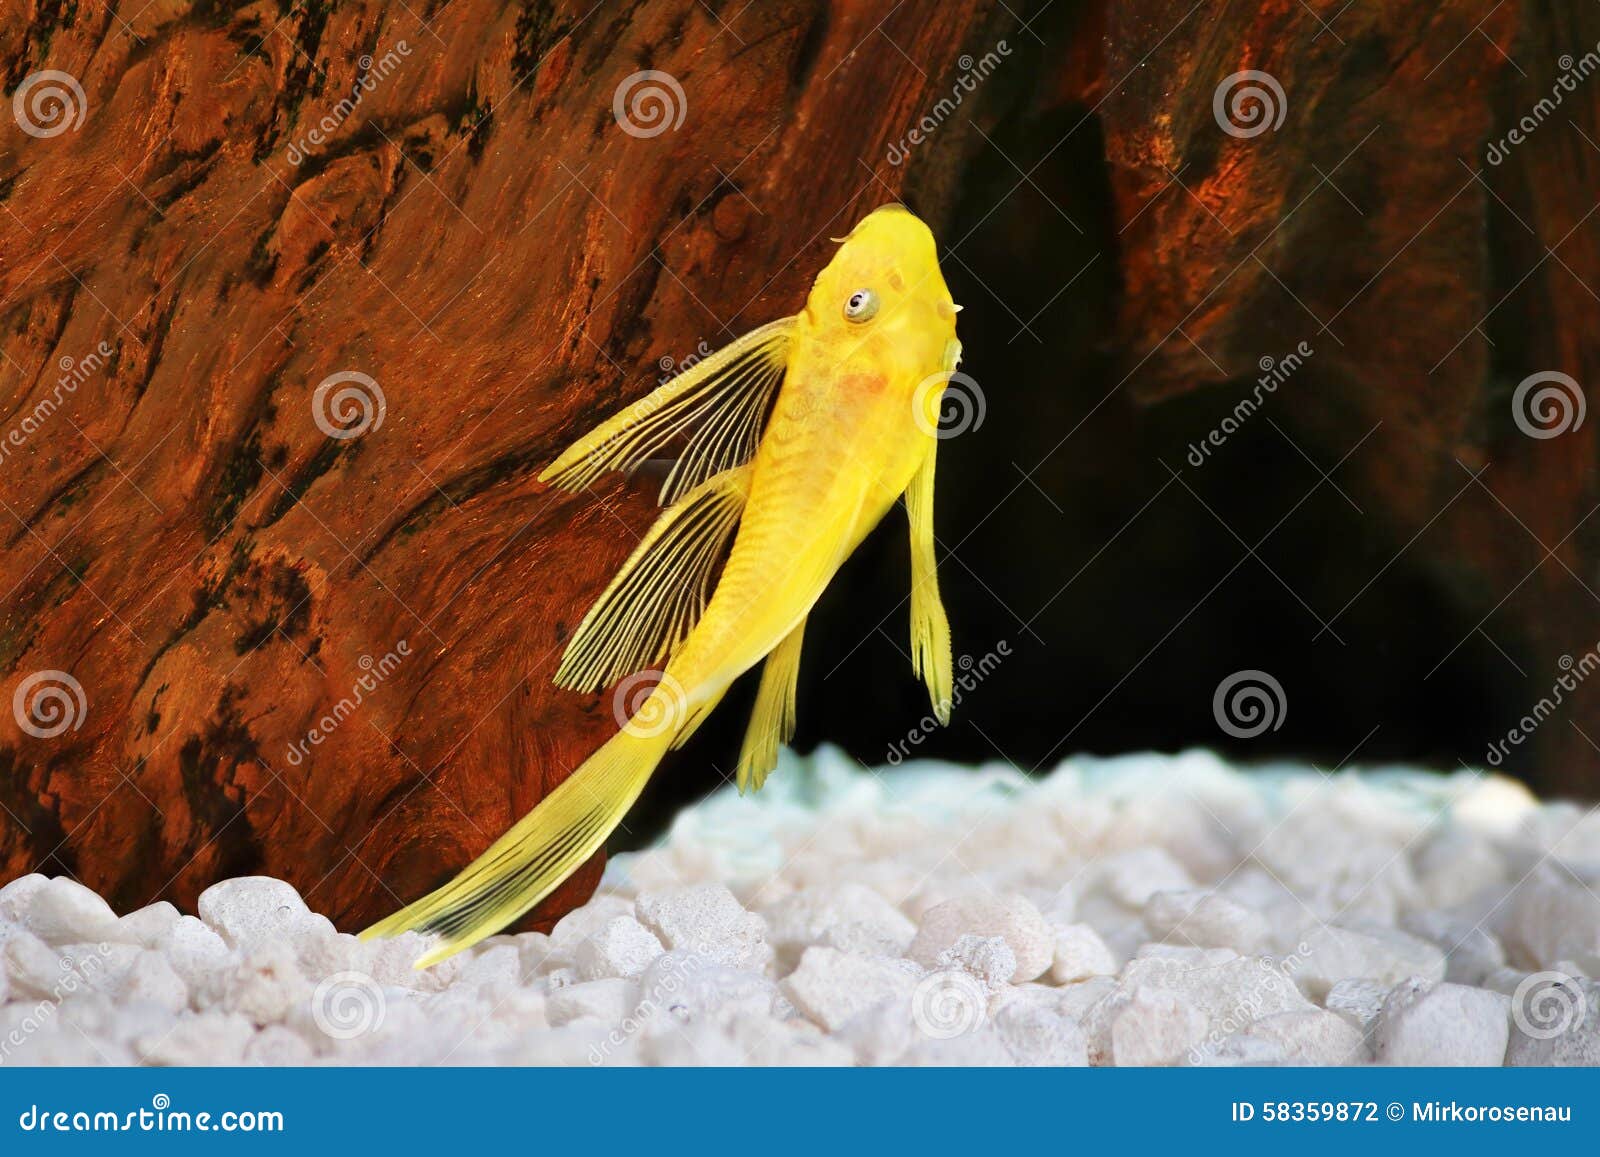 pleco catfish albino bristle-nose pleco gold ancistrus dolichopterus plecostomus aquarium fish